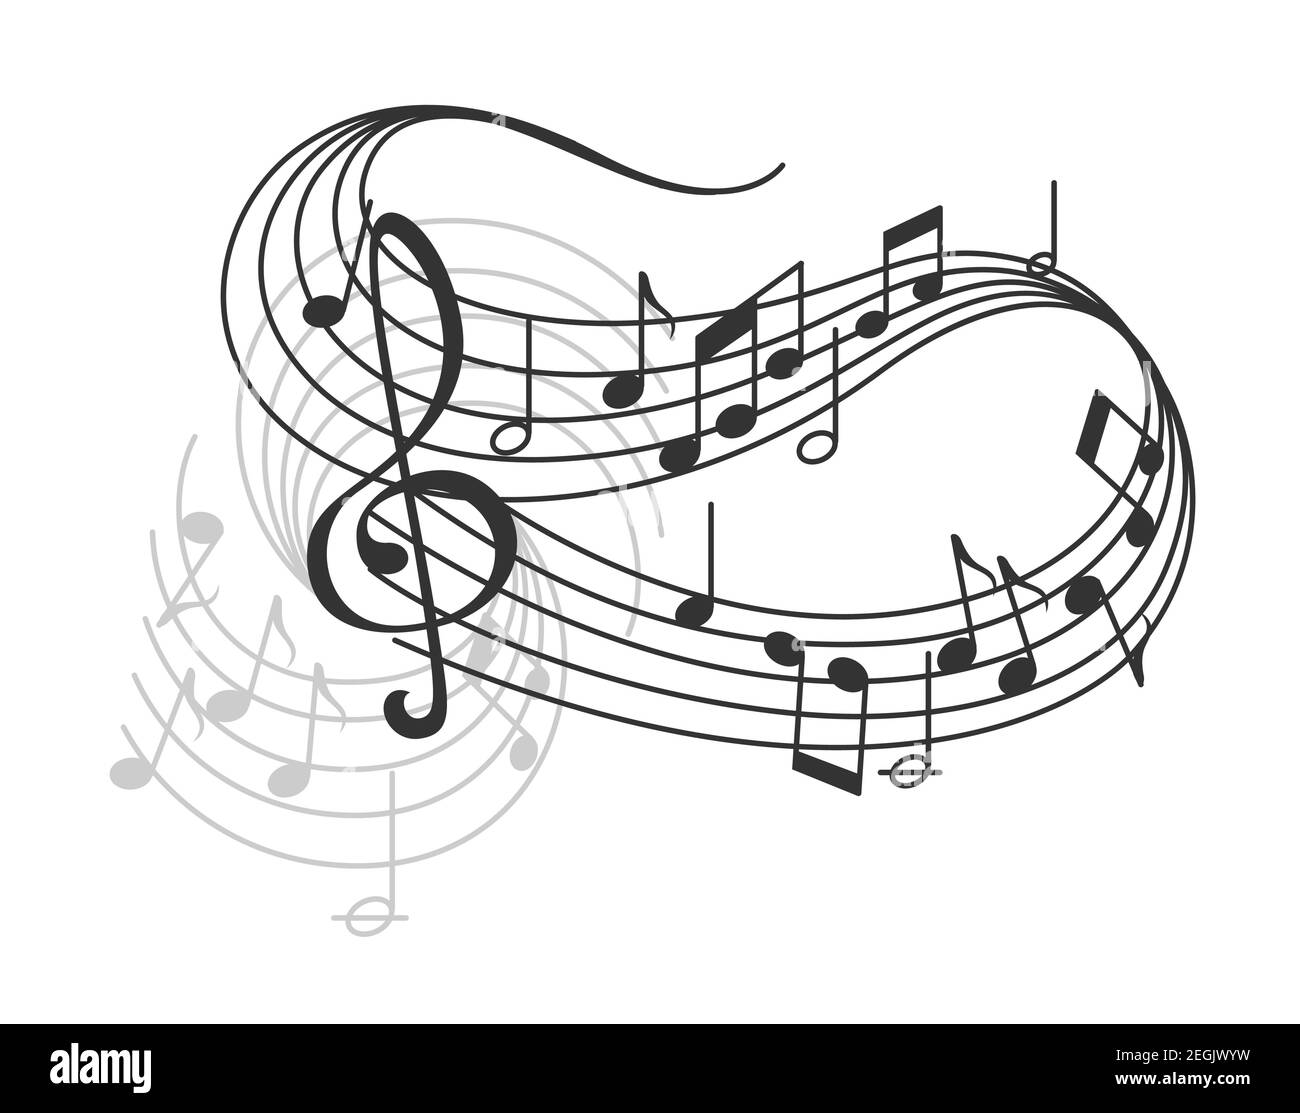 Musikplakat des Musikpersonals oder Notenstaten und Schlüssel. Vektor-Design von musikalischen Noten auf Mitarbeiter für Jazz-Nacht oder klassische Oper Konzert und Ork Stock Vektor